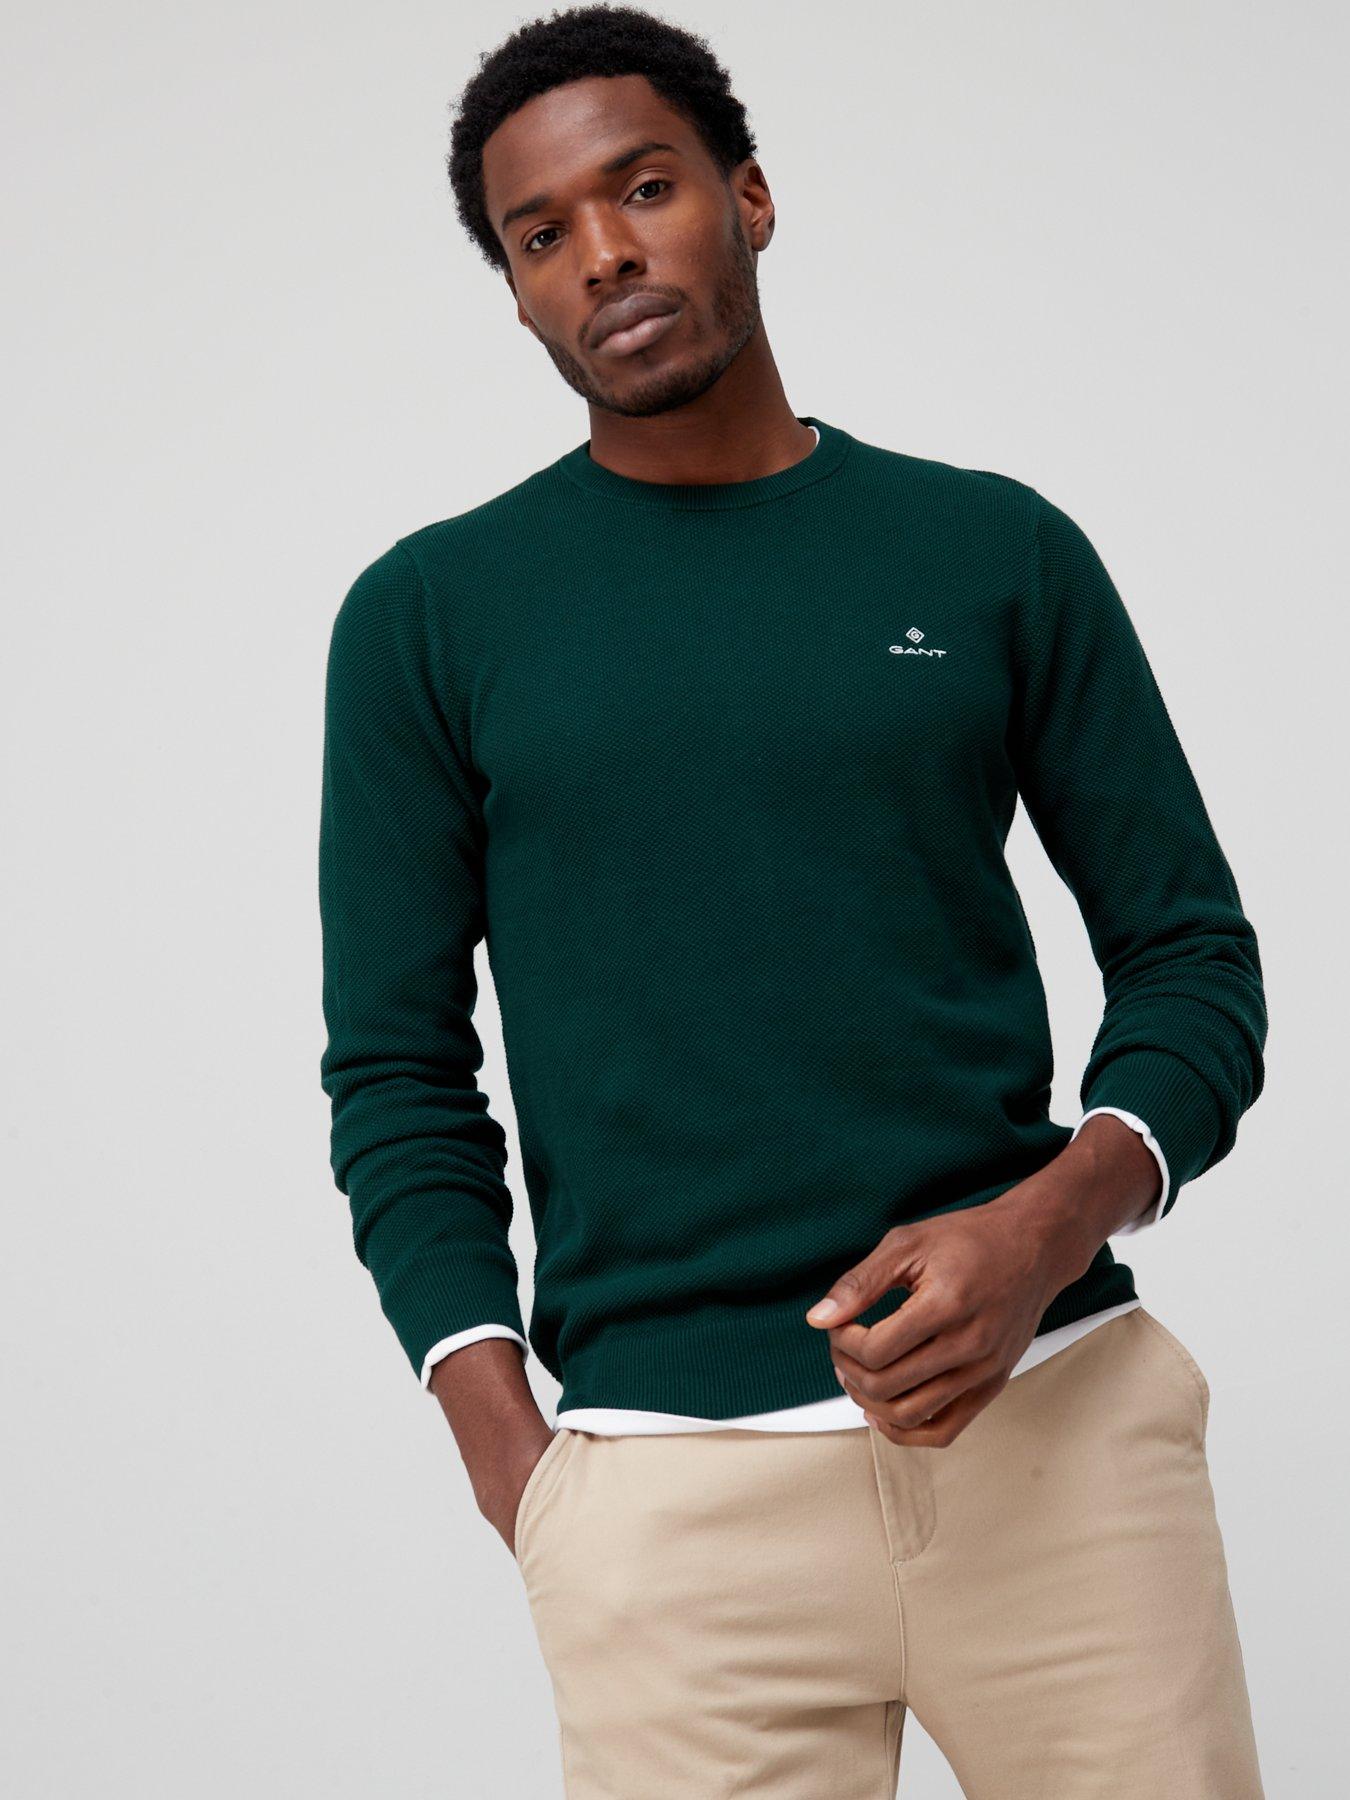 Jumpers & Cardigans Cotton Pique Knitted Jumper - Tartan Green